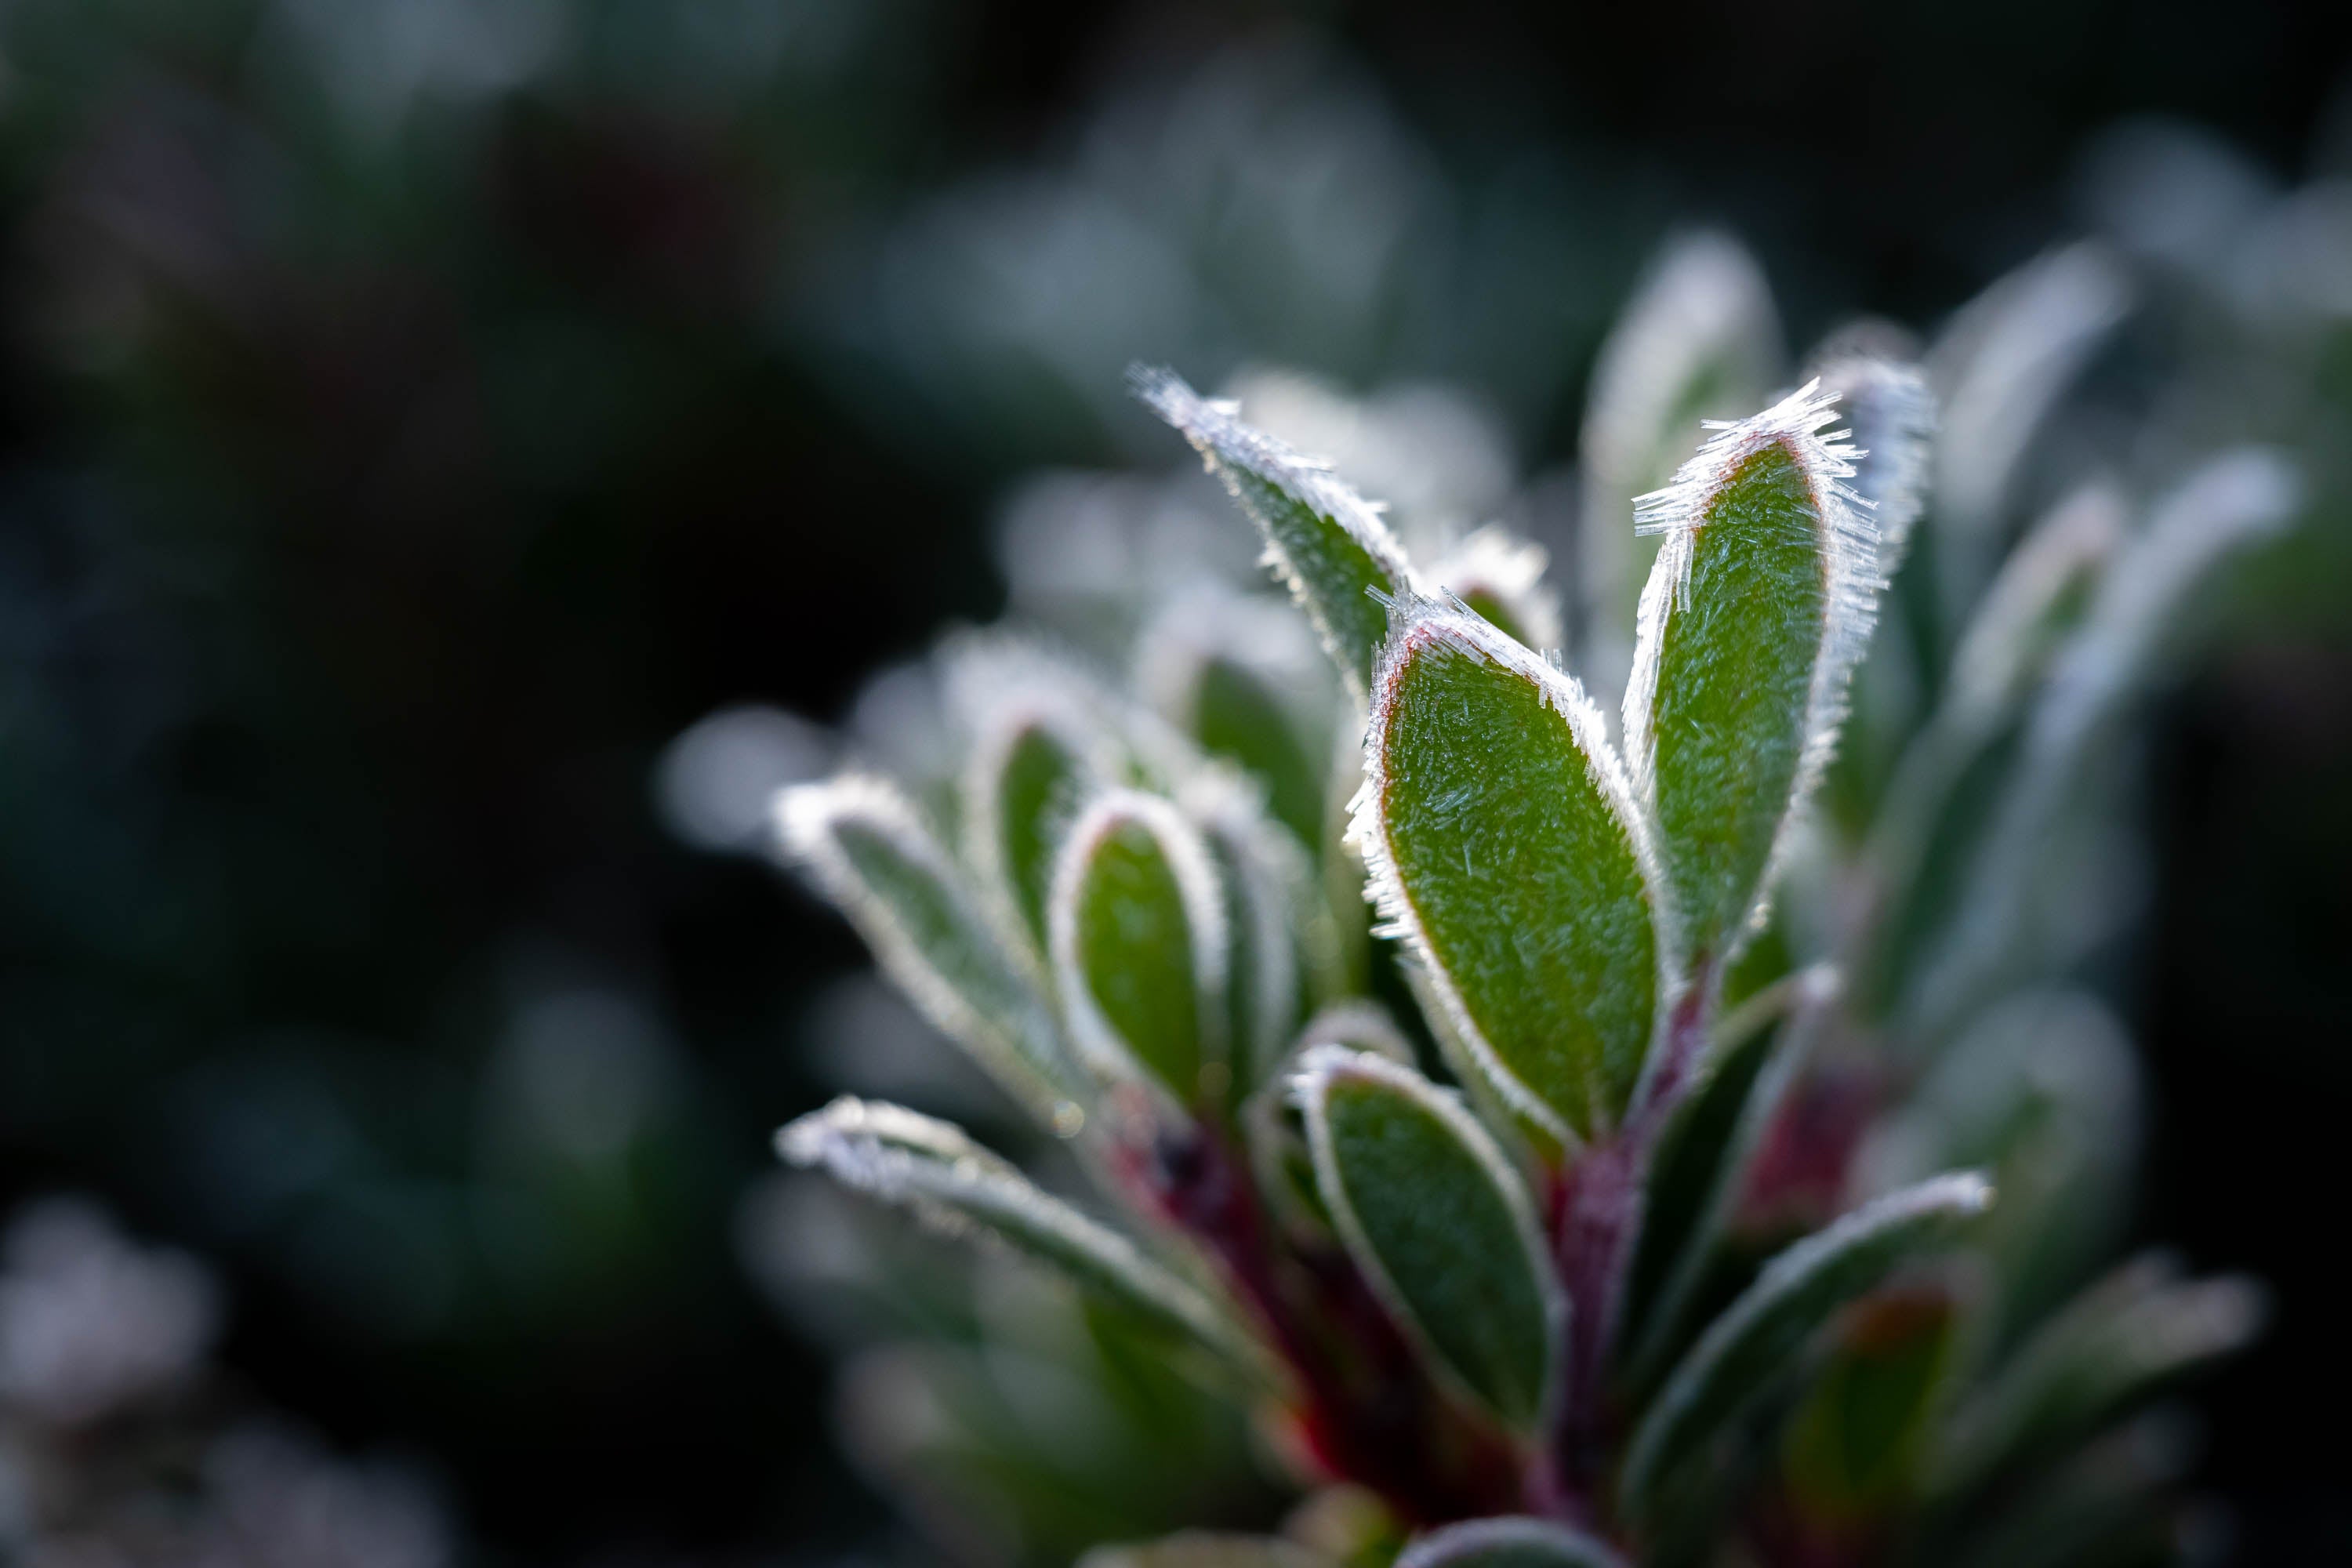 Frozen Plant detail, Cradle Mountain, Tasmania